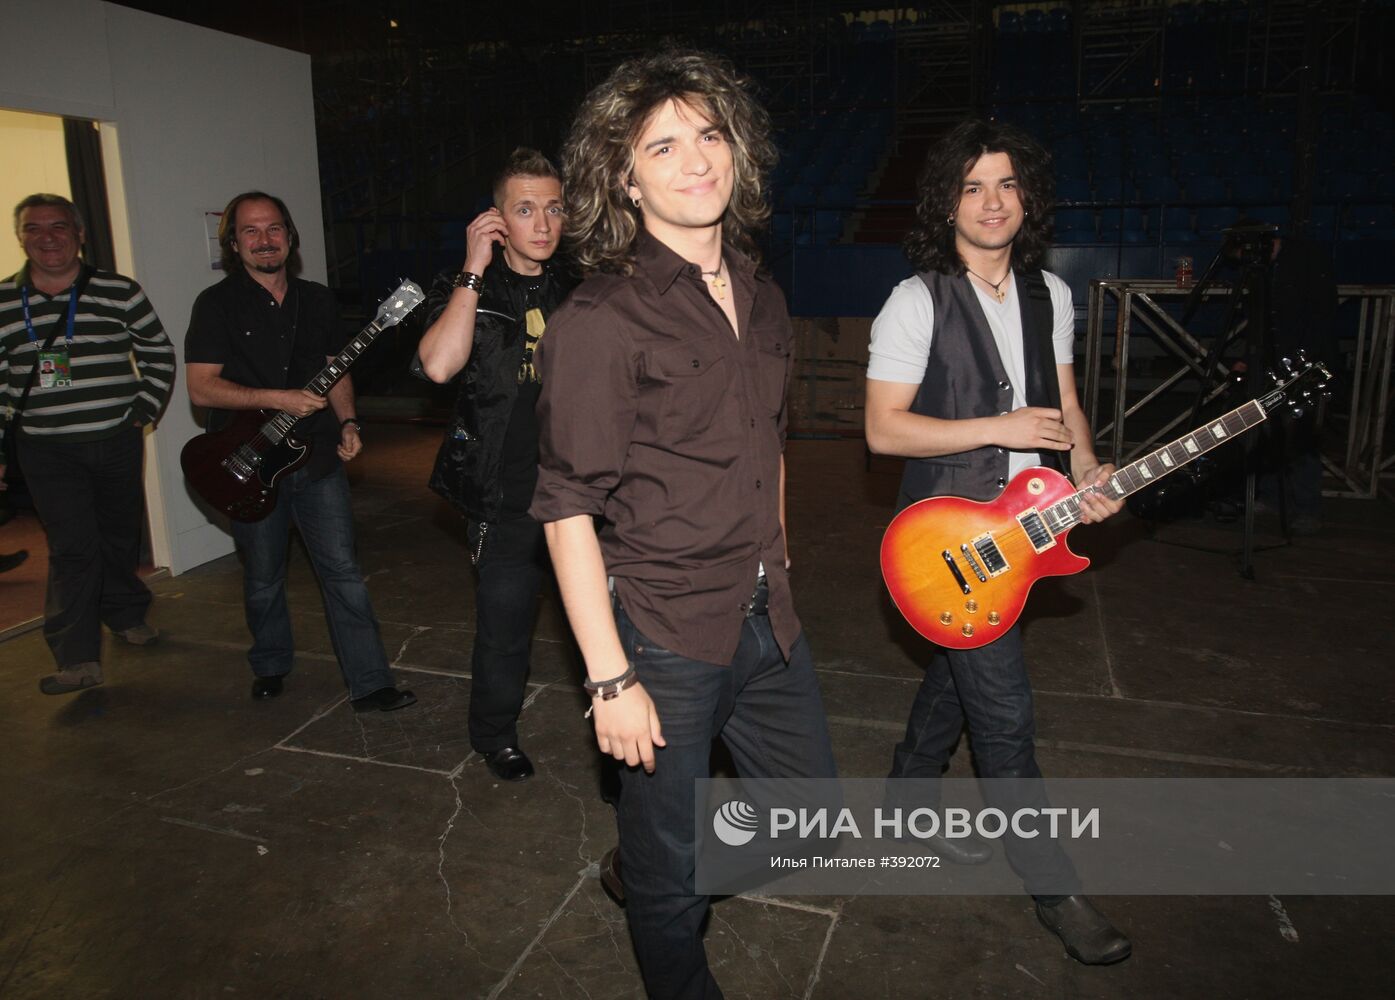 Участники "Евровидения" рок-дуэт Next Time (Македония)